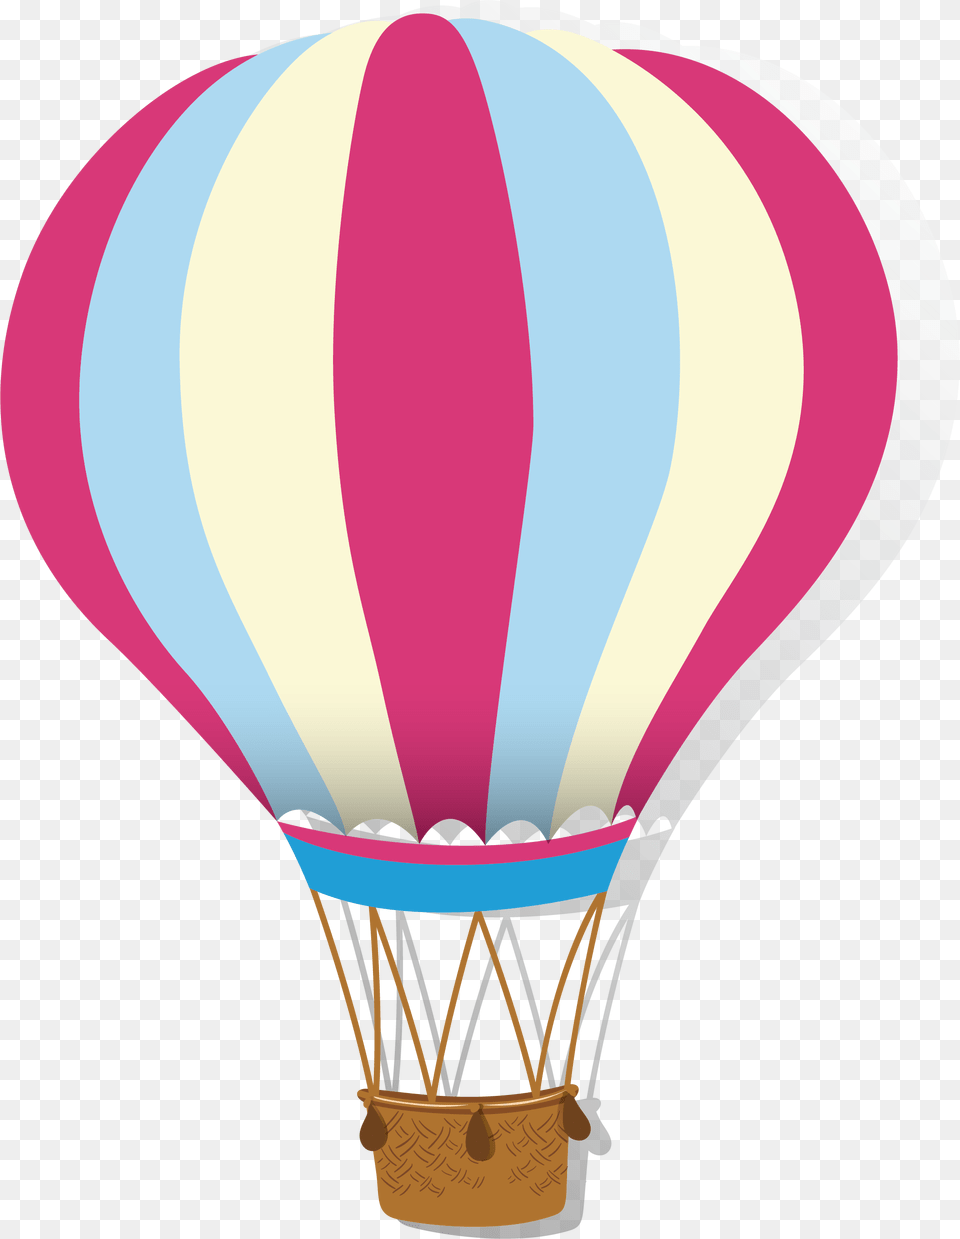 Hot Air Balloon Airplane Hot Air Balloon Clipart Pink, Aircraft, Hot Air Balloon, Transportation, Vehicle Free Png Download